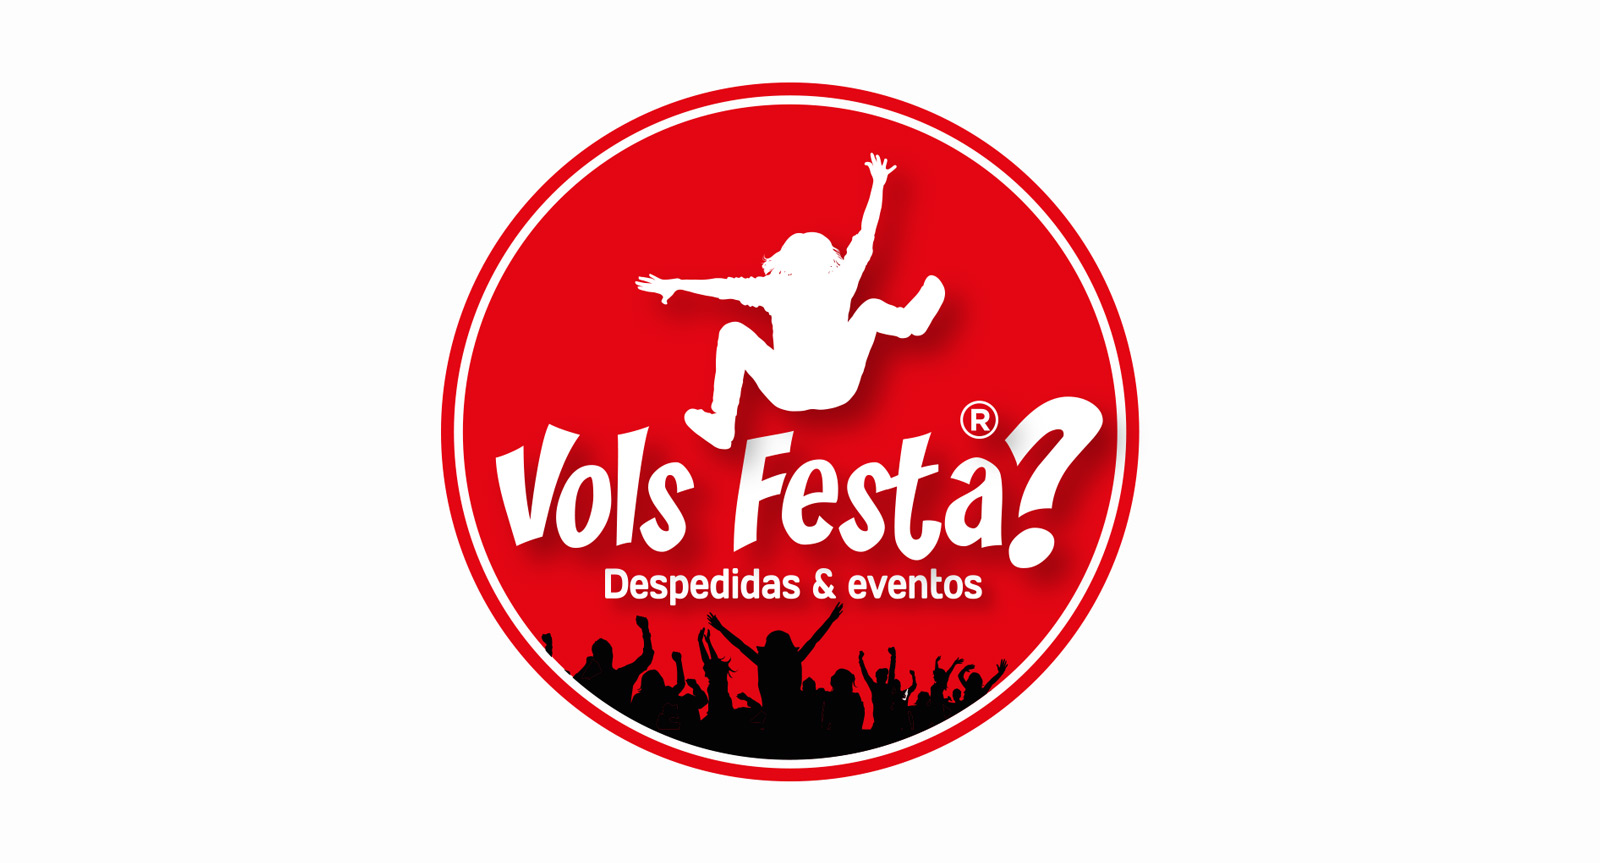 Diseño gráfico y creativo de logo y branding para marca de discotecas fiestas y eventos Volsfesta